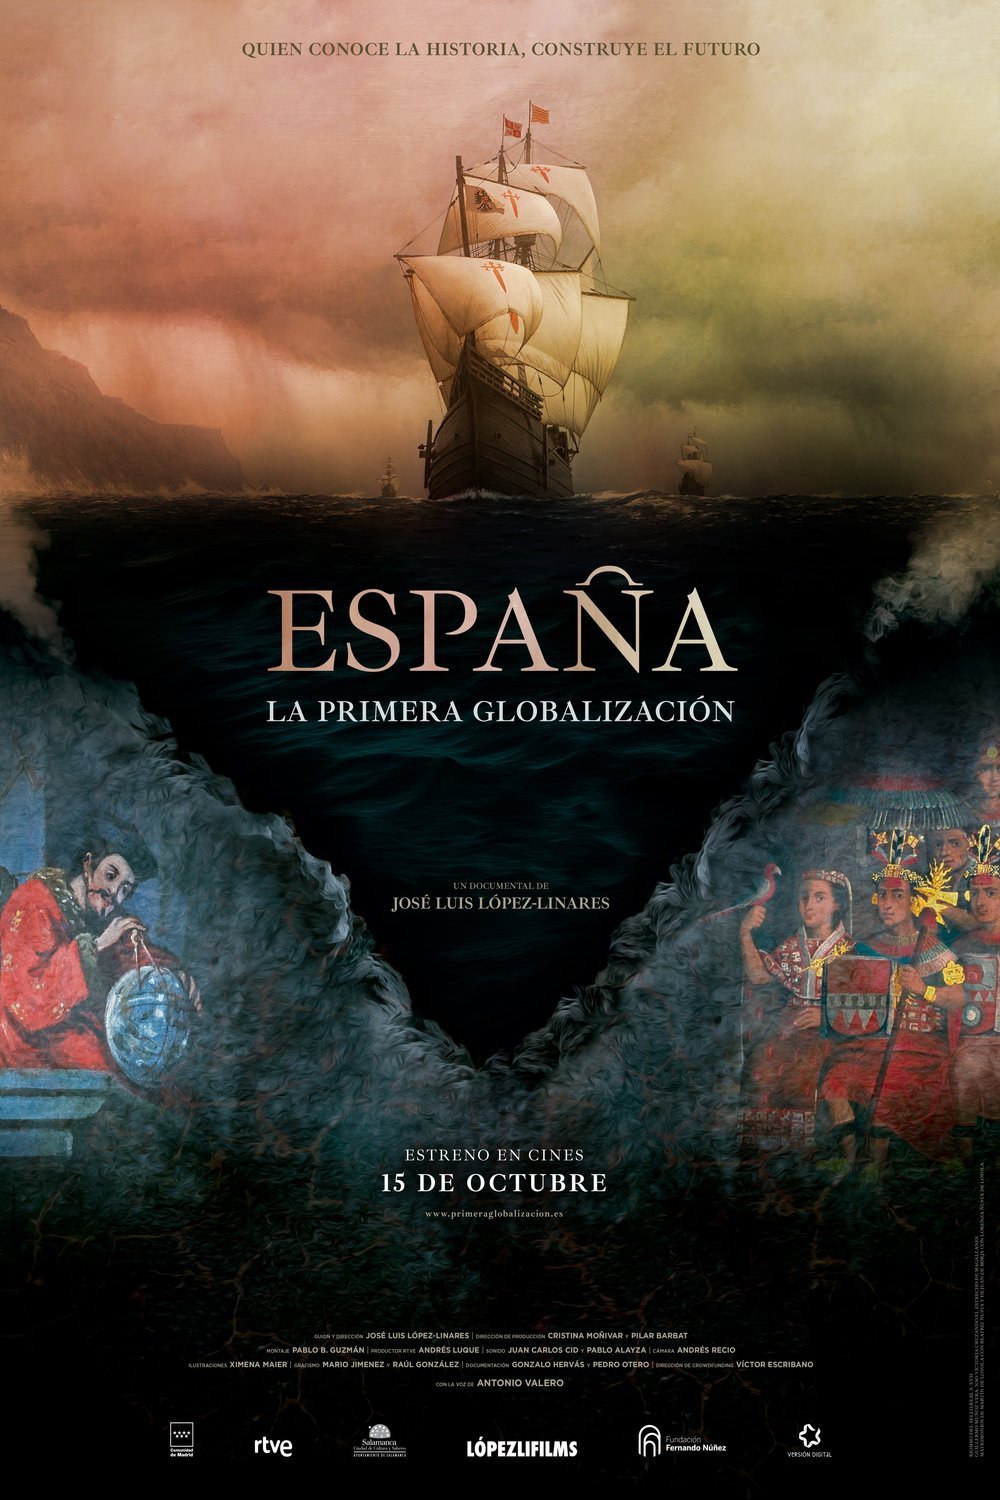 Poster of the movie España, la primera globalización